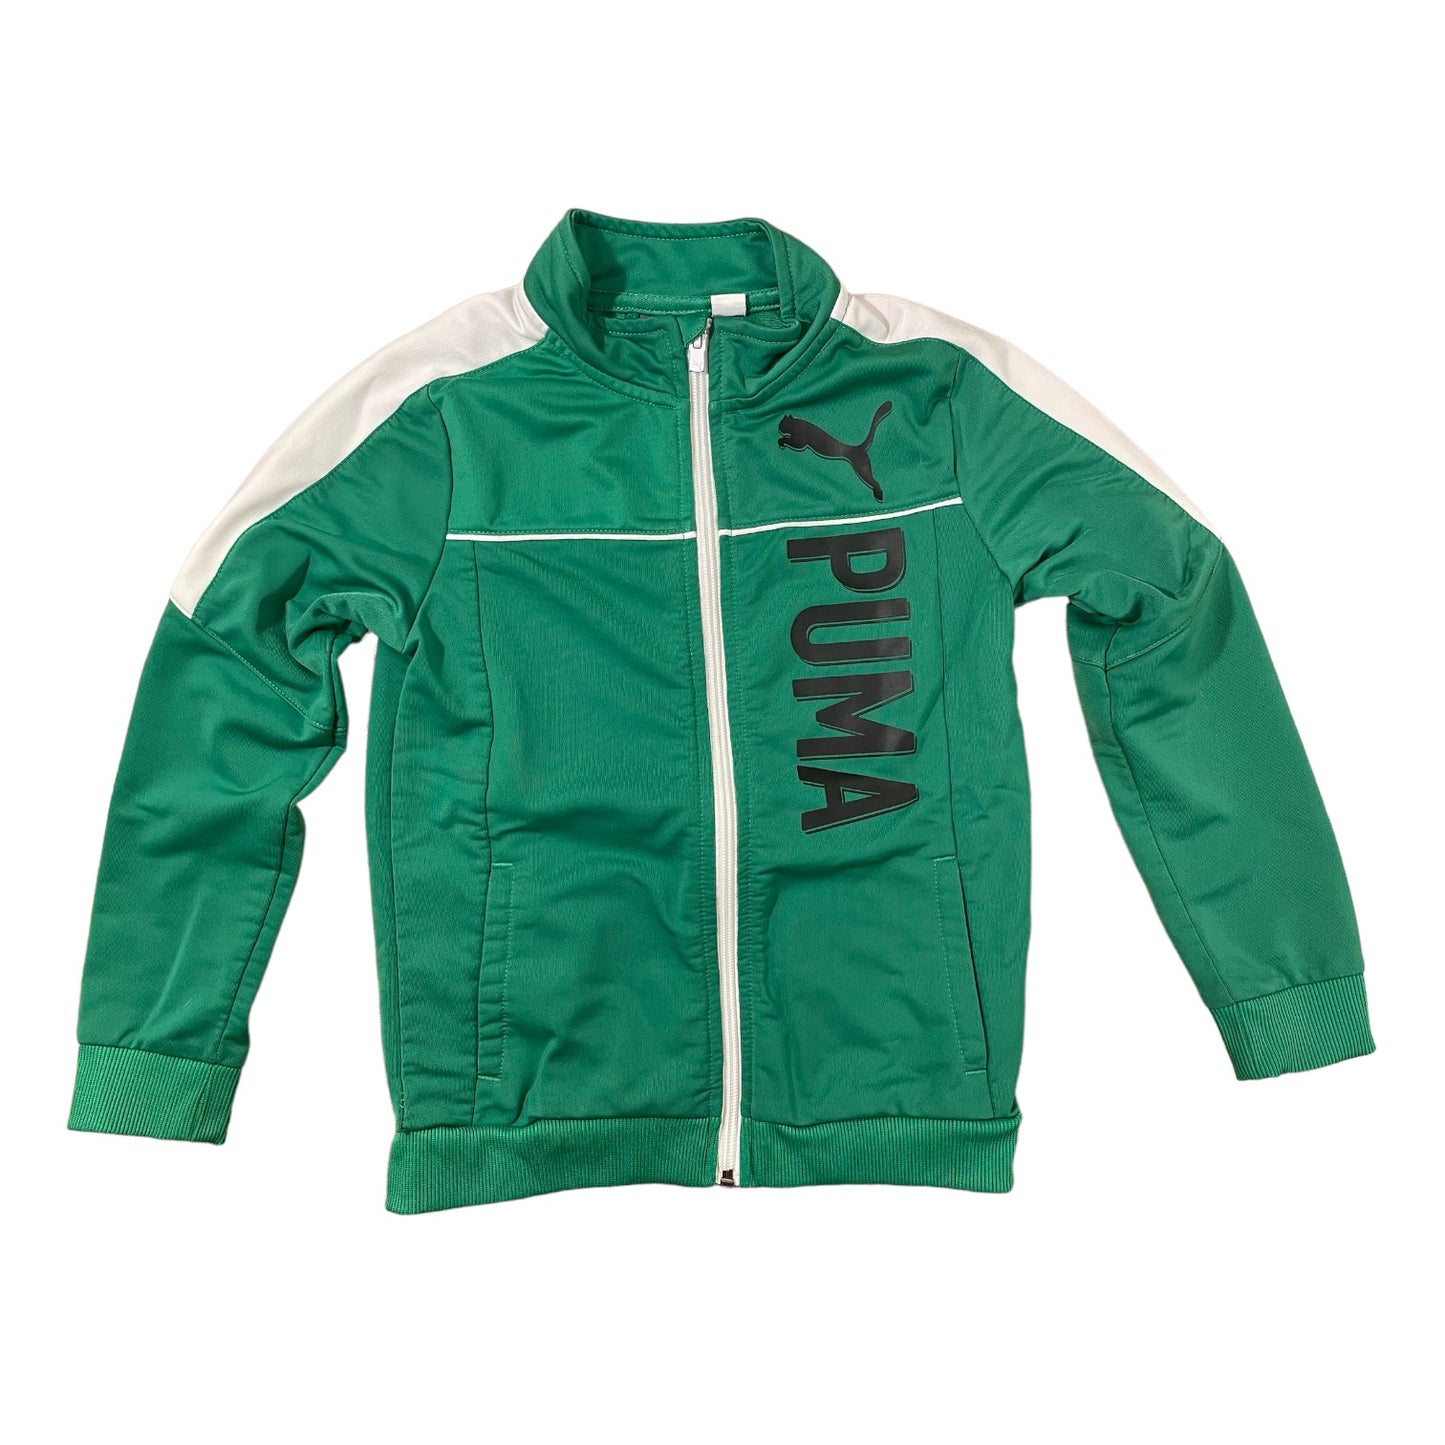 Puma Size 6 Athletic Jacket